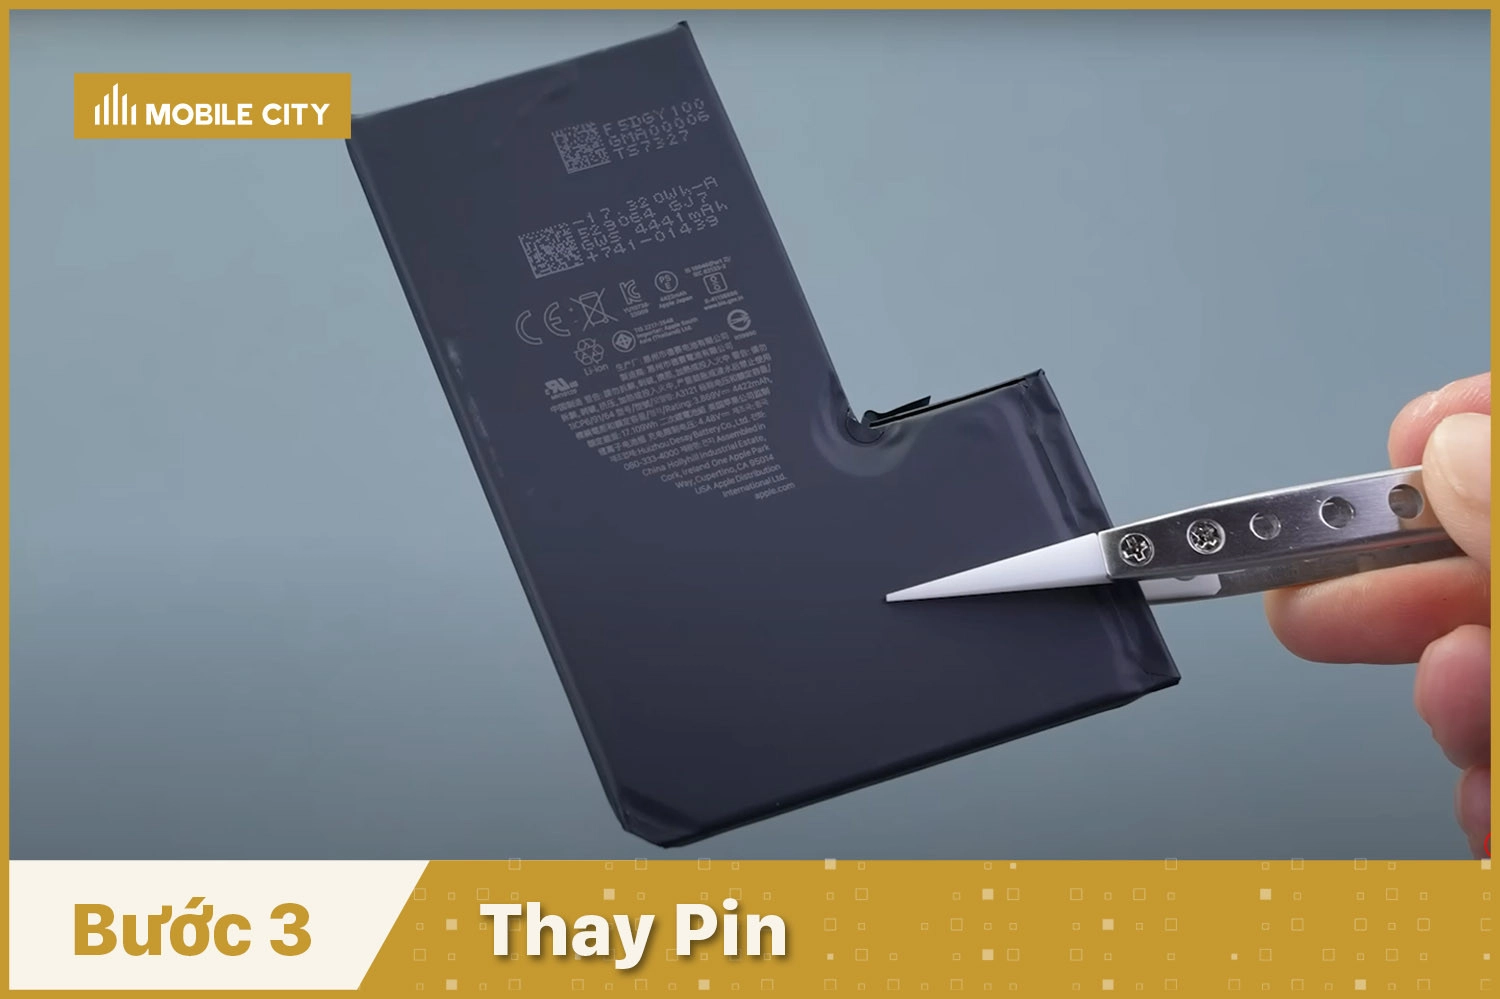 Thay Pin